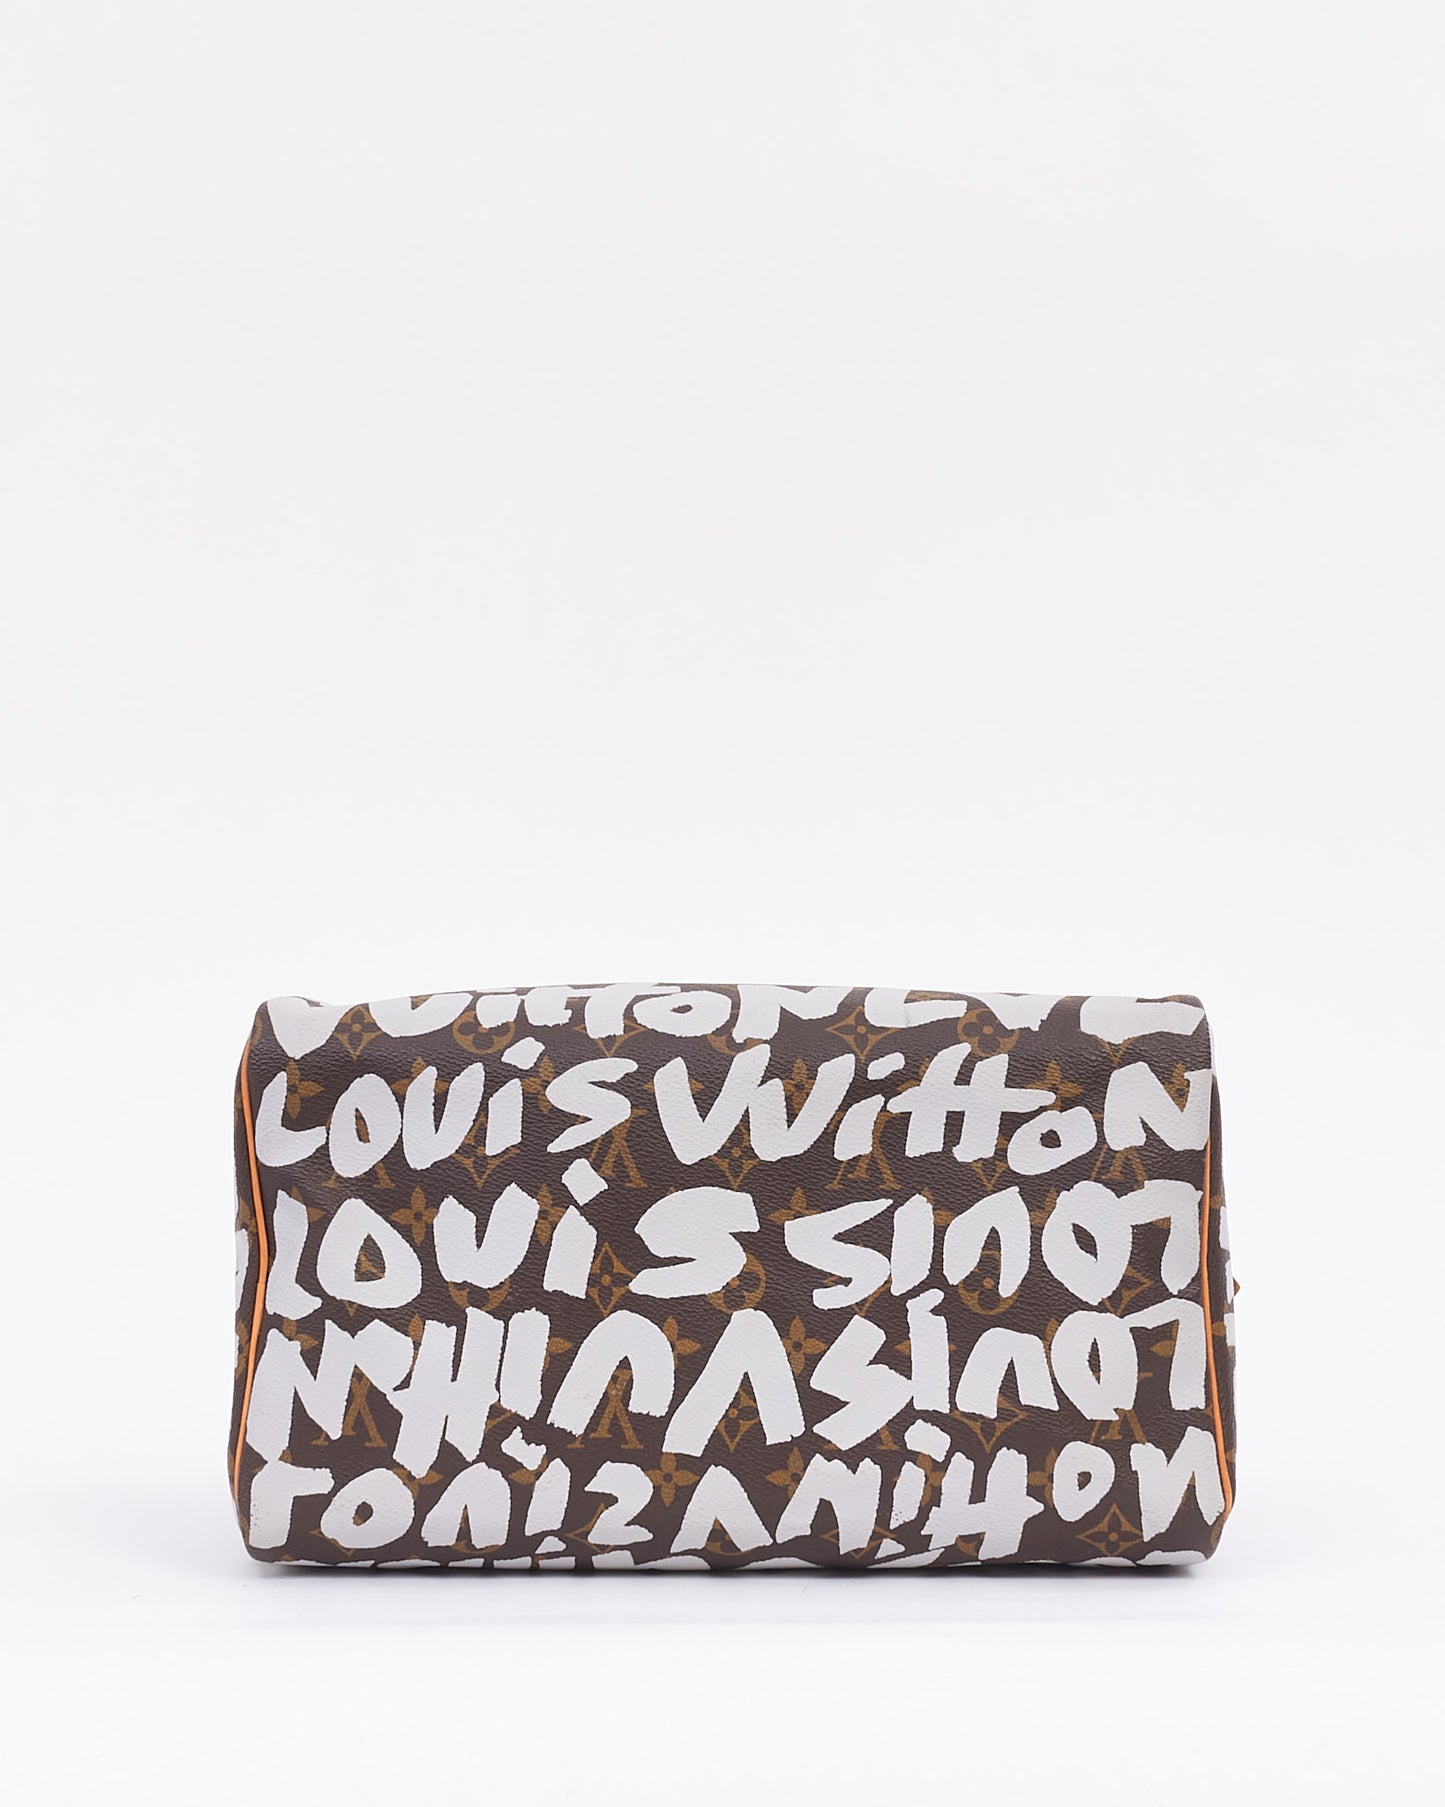 Louis Vuitton Monogramme Stephen Sprouse Graffiti Speedy 30 Sac